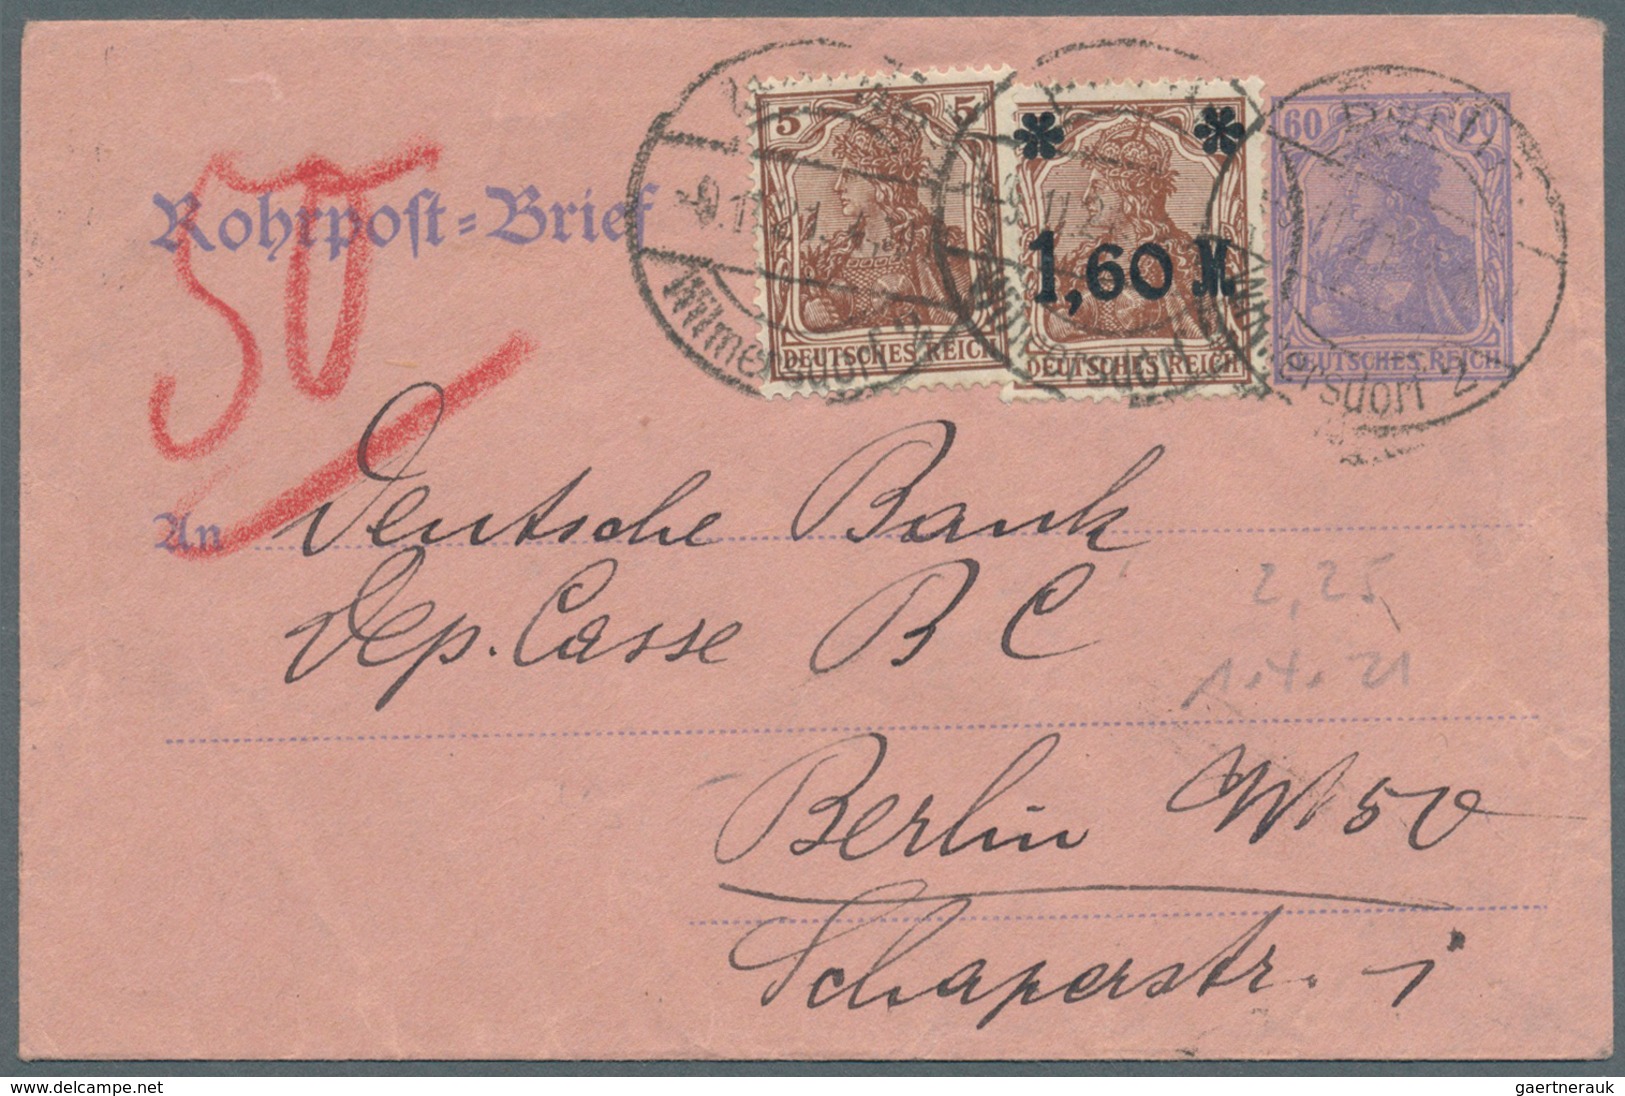 Berlin - Postschnelldienst: 1877/1963, ausstellungsmäßig aufgezogene, spezialisierte Sammlung der Ro